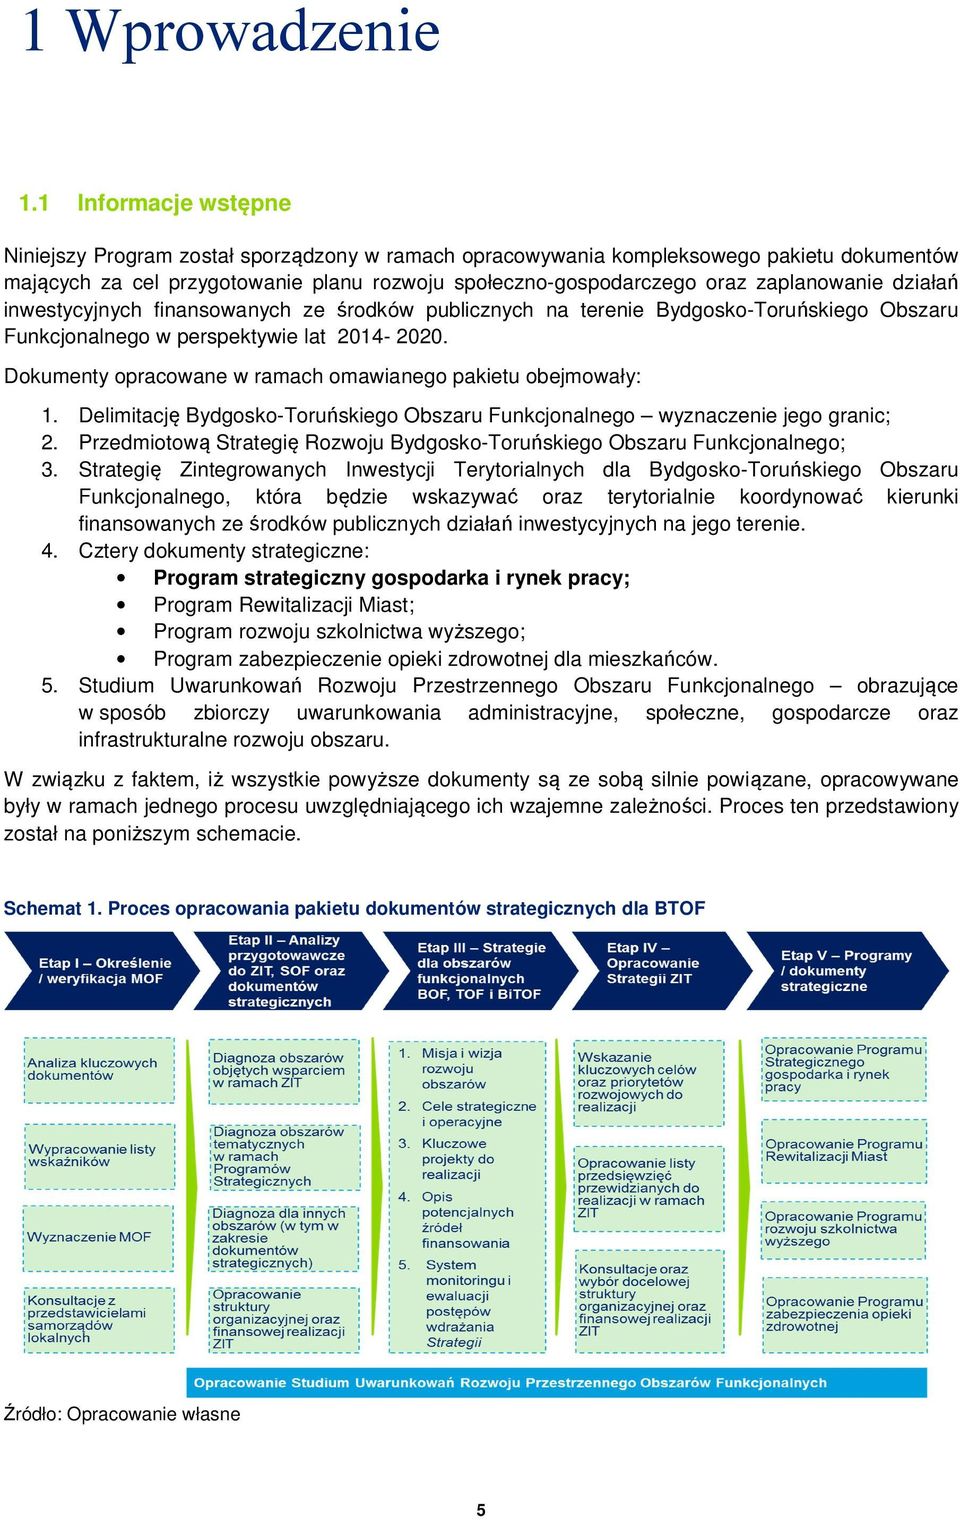 działań inwestycyjnych finansowanych ze środków publicznych na terenie Bydgosko-Toruńskiego Obszaru Funkcjonalnego w perspektywie lat 2014-2020.